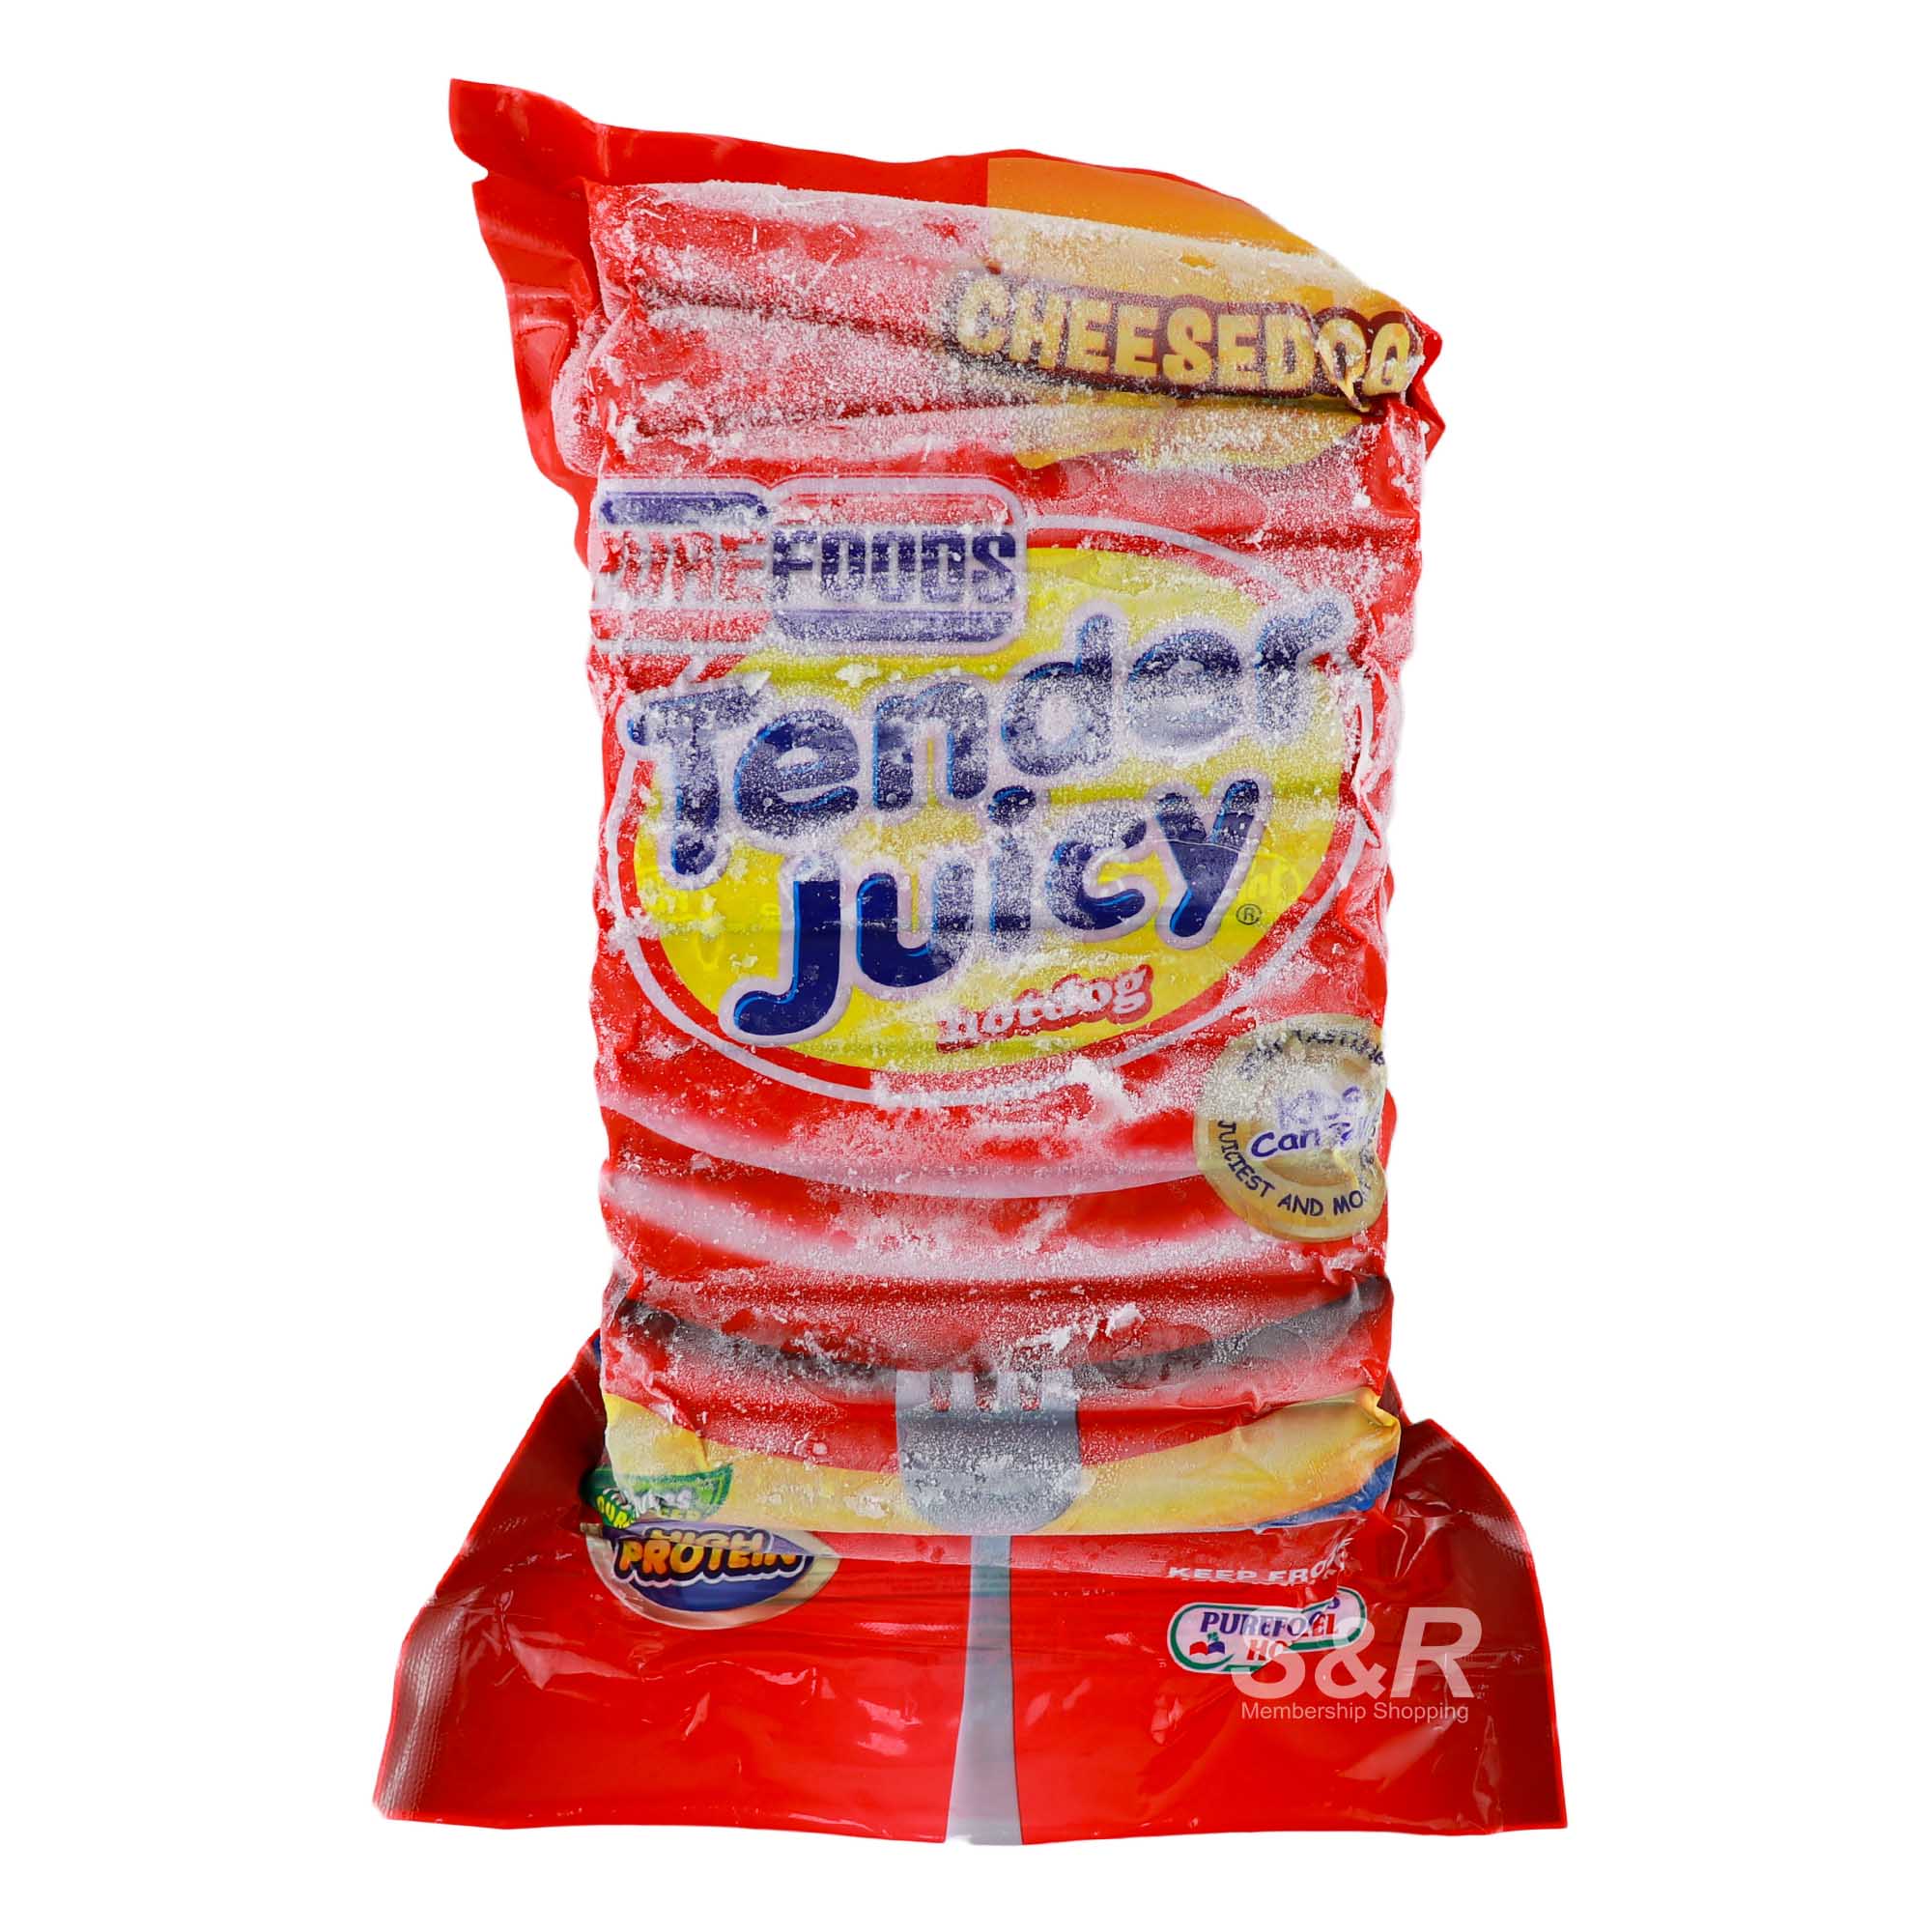 Purefoods Tender Juicy Cheesedog 1kg